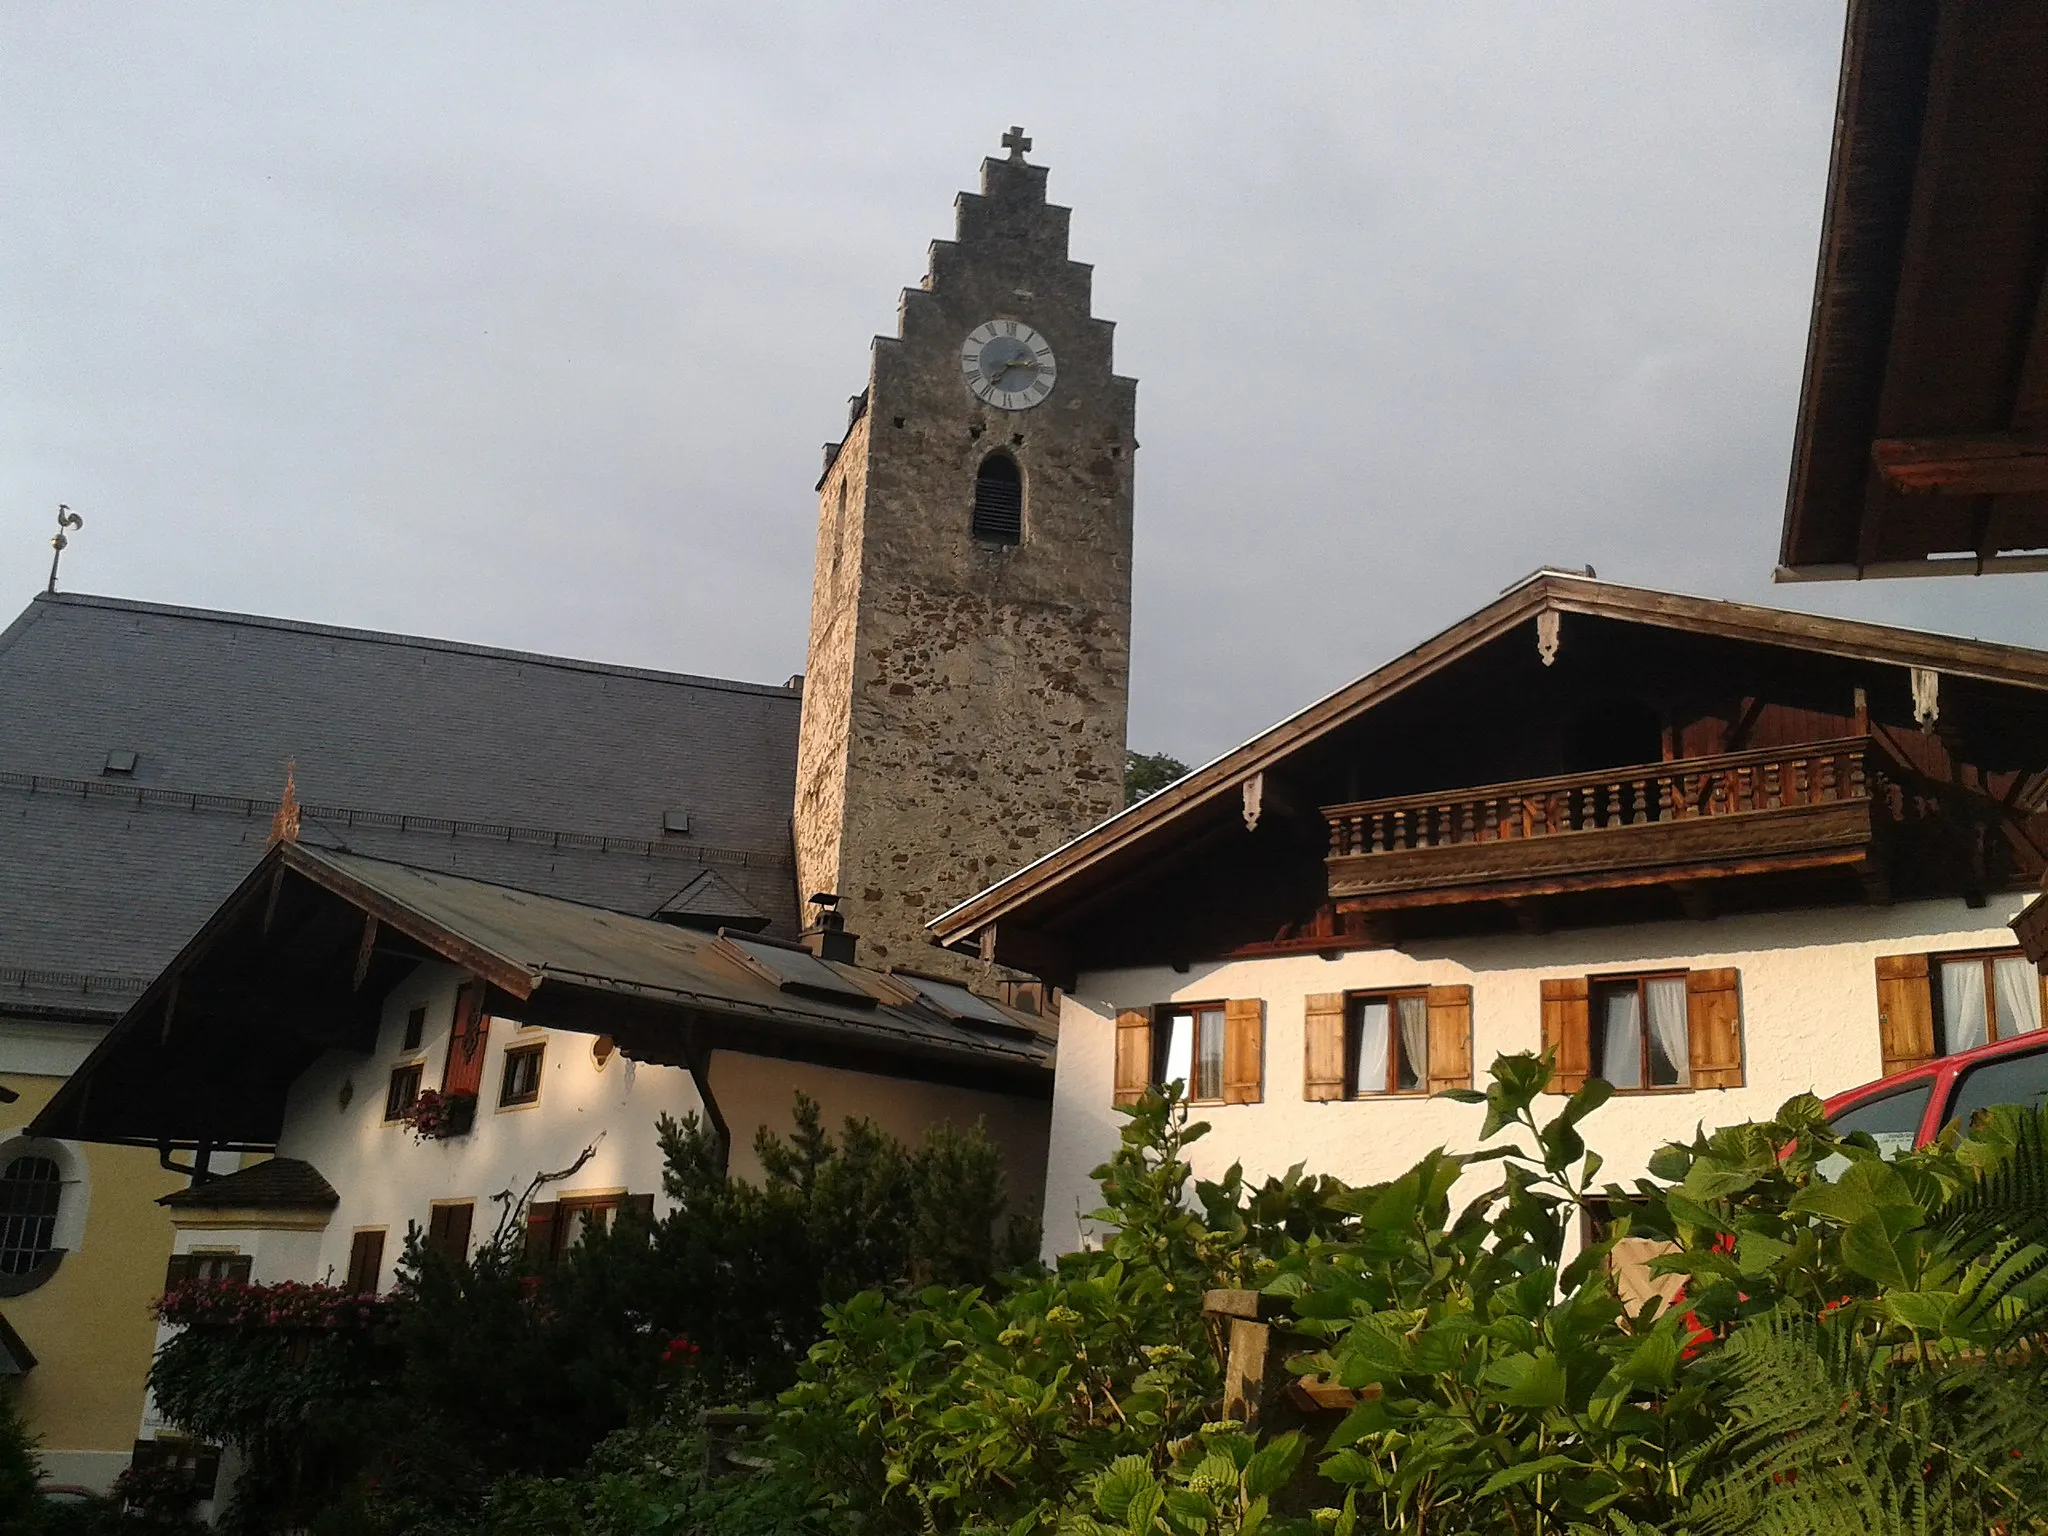 Photo showing: Zu sehen ist der Neubeurer Marktplatz im Landkreis Rosenheim. Im Zentrum des Bildes befindet sich die Kirche Mariä Empfängnis. Davor befinden sich historische Häuser.